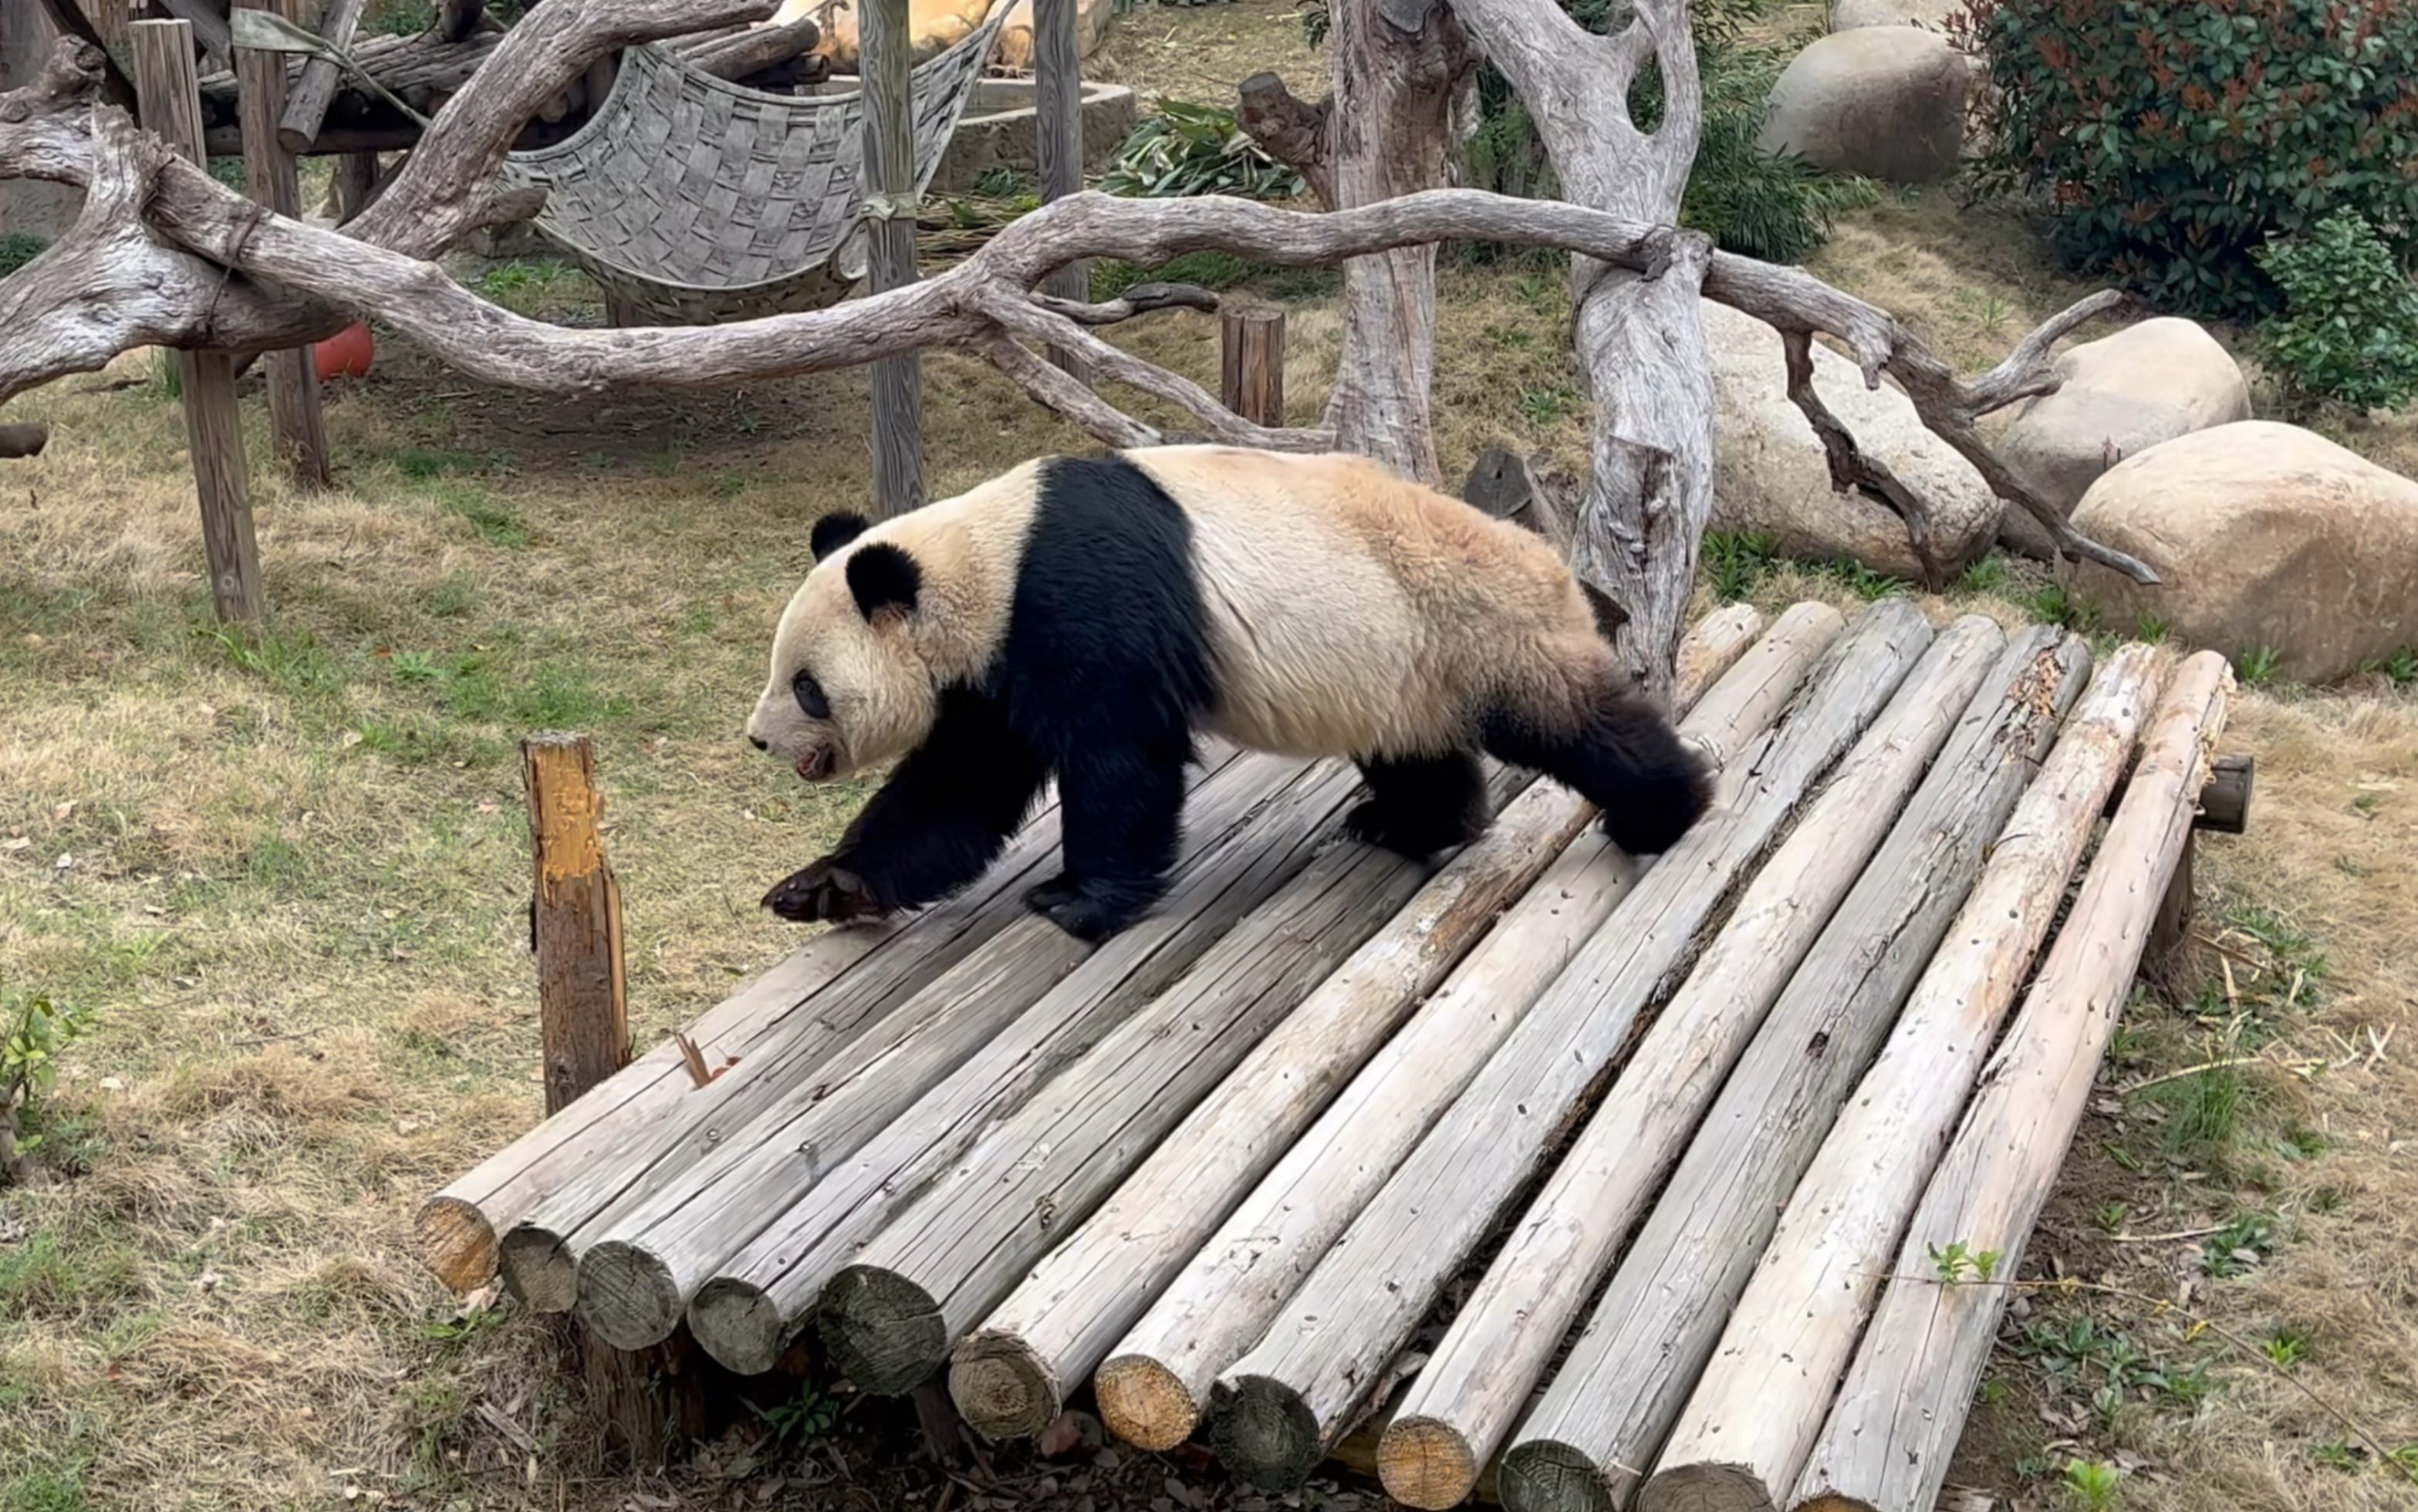 滕州动物园大熊猫图片